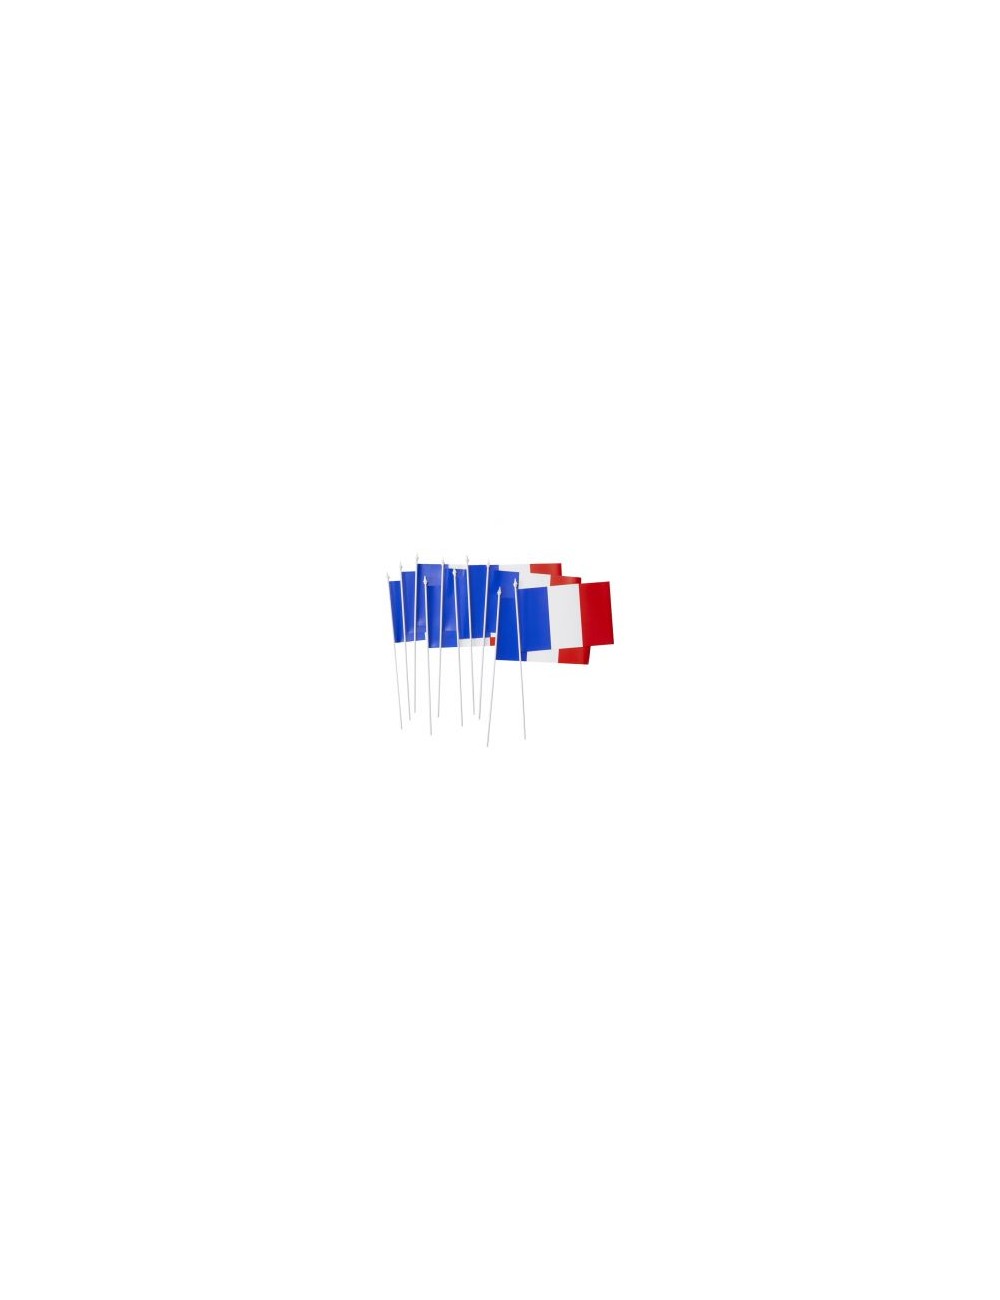 Sachet de drapeaux plastique de la France